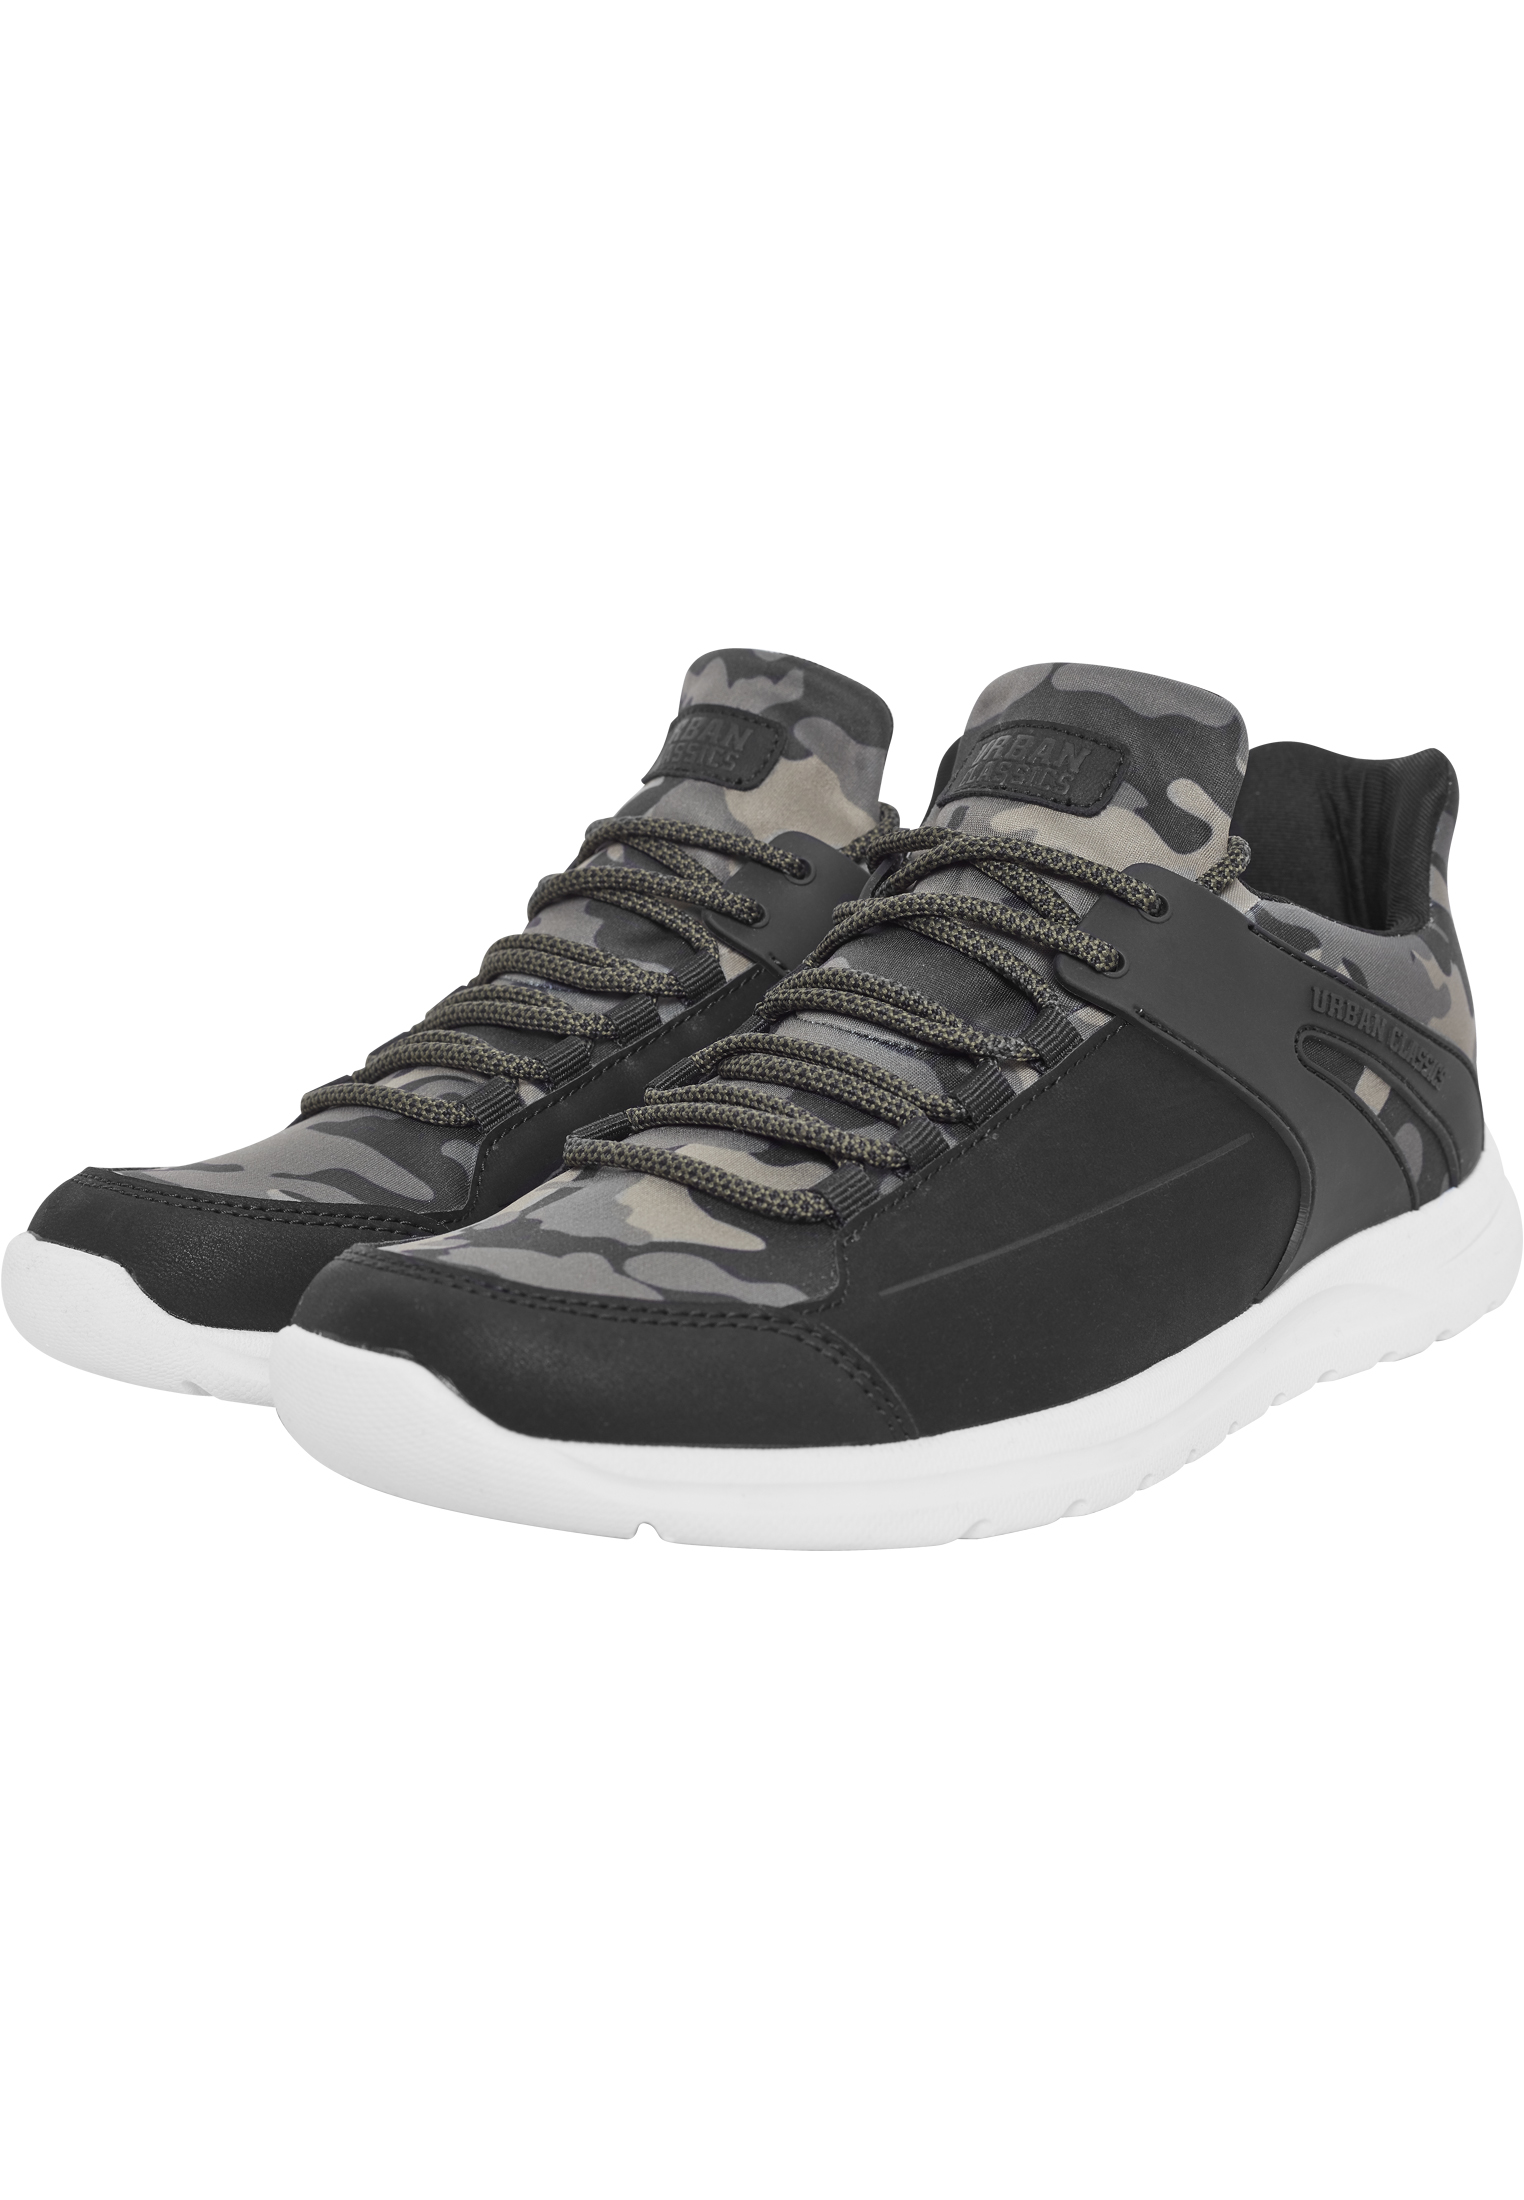 Schuhe Trend Sneaker in Farbe olivecamo/blk/wht